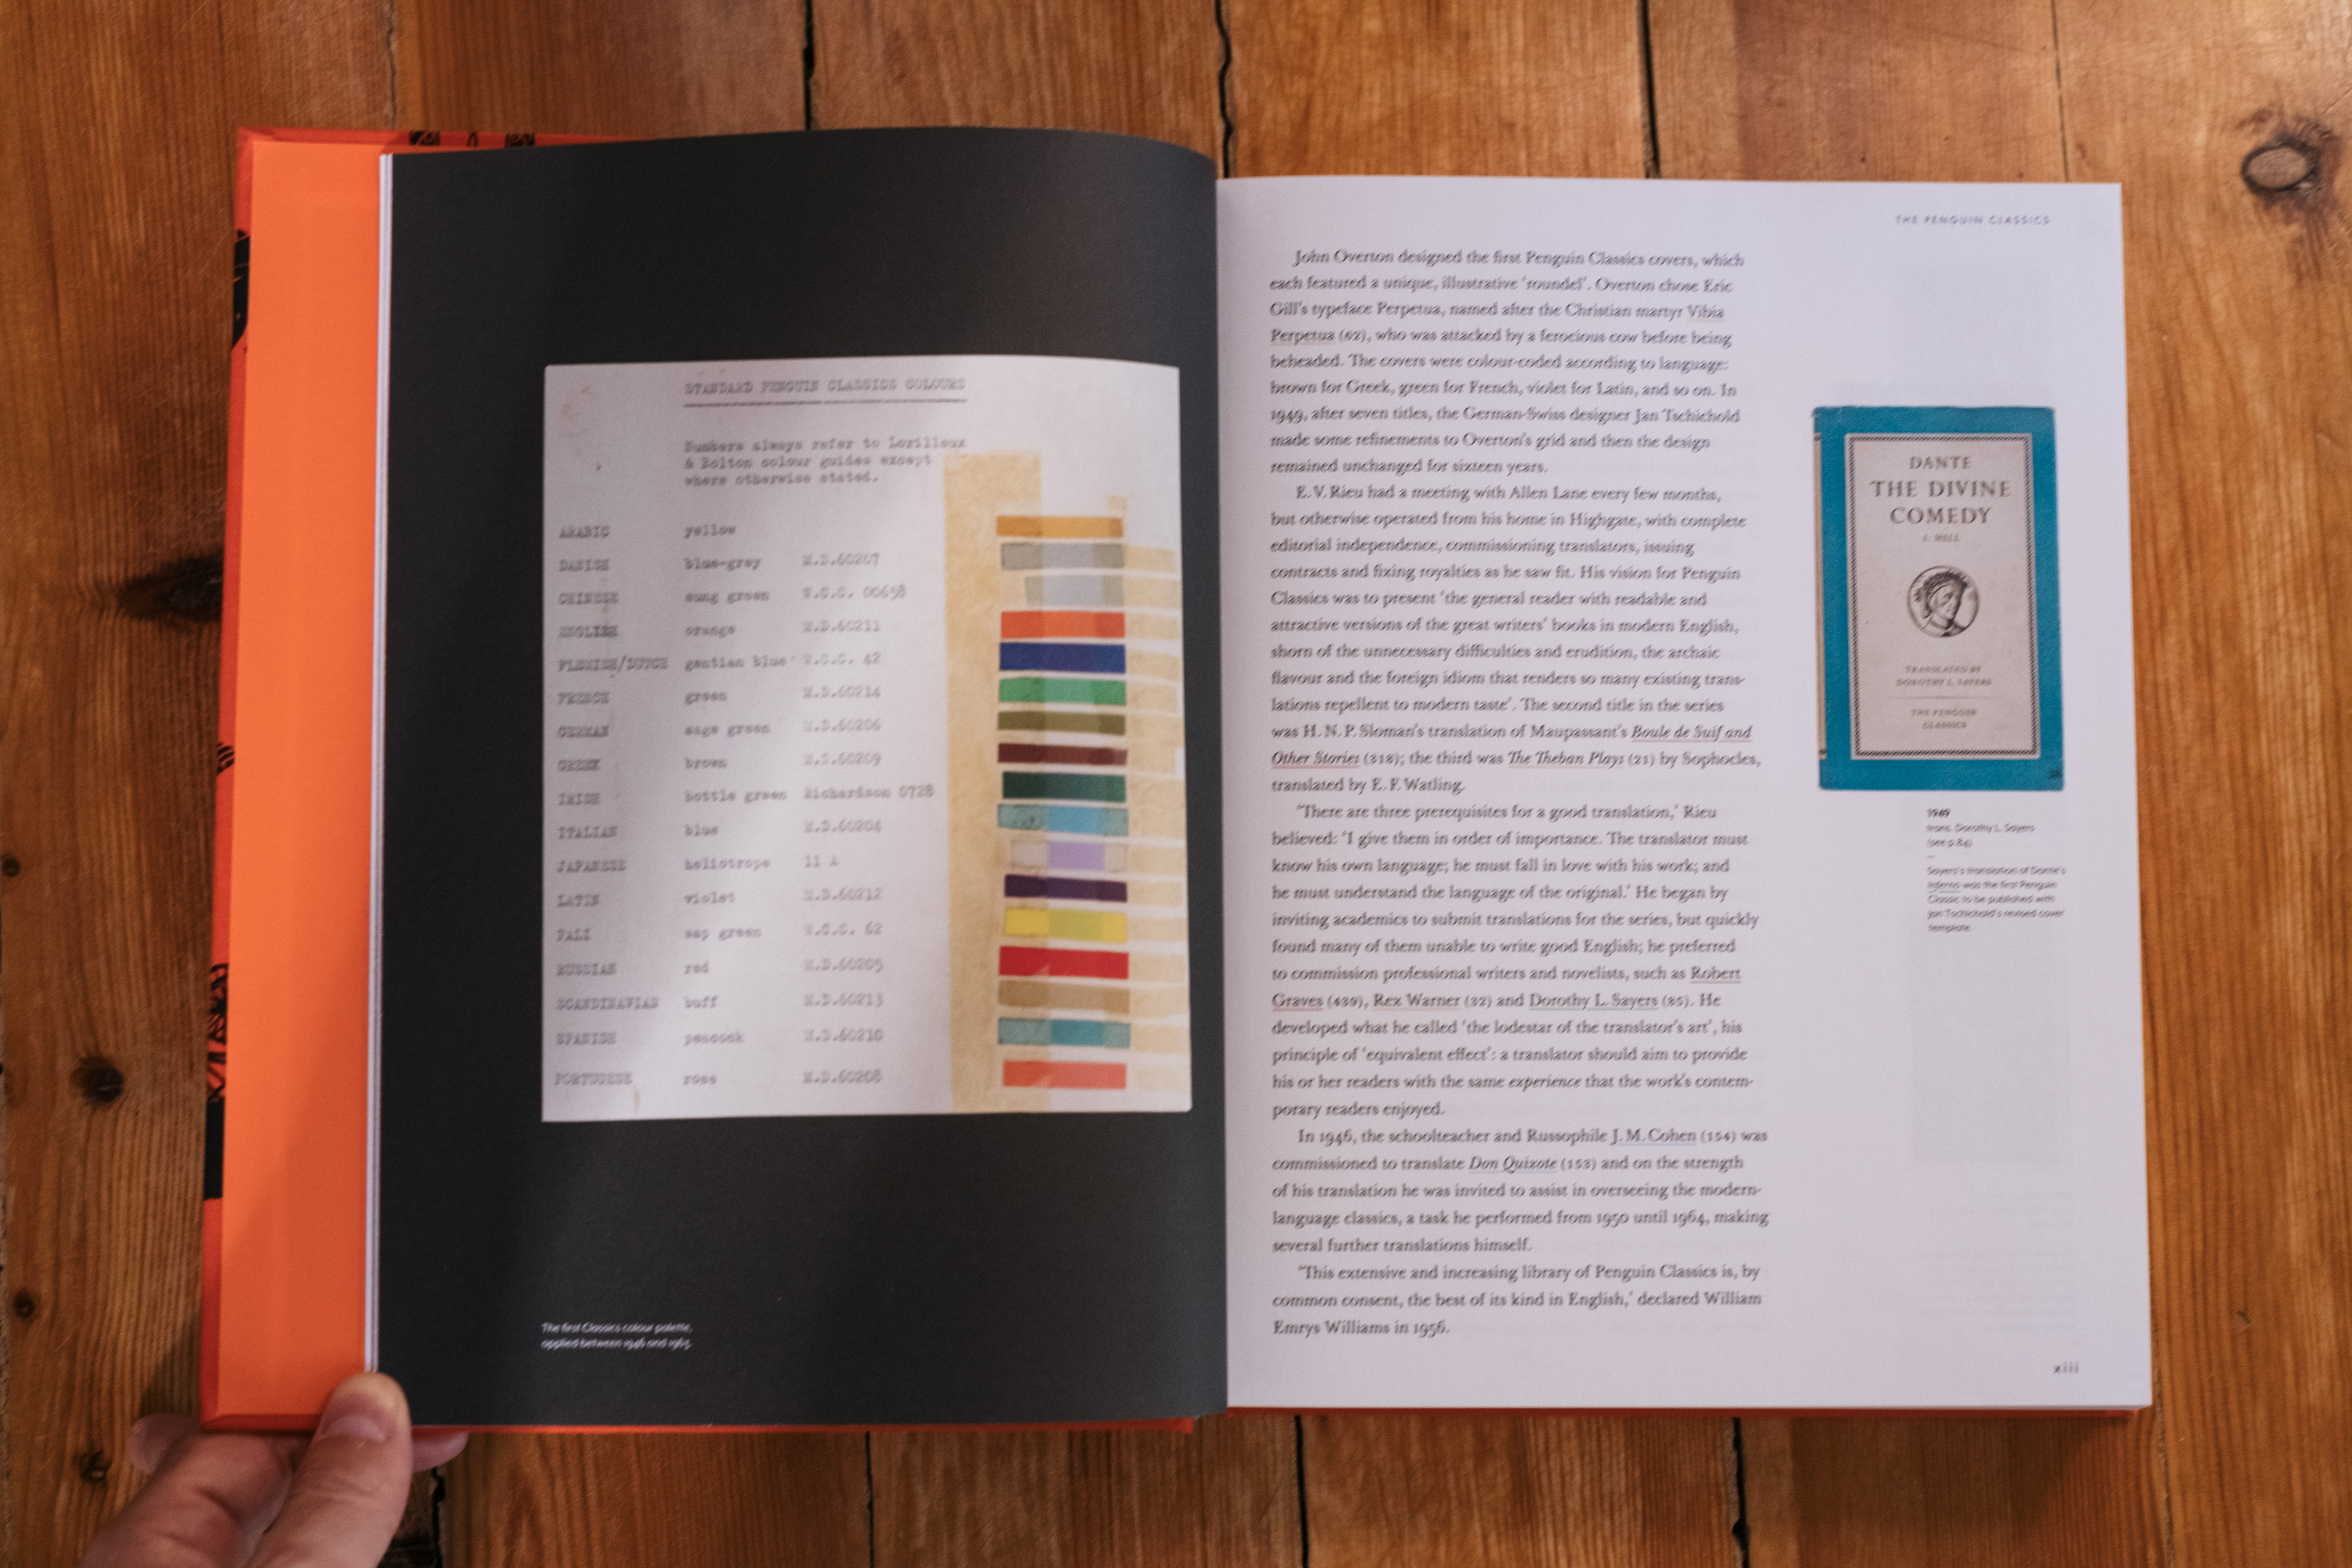 Página XII de 'The Penguin Classics Book' donde se muestra el esquema de color utilizado por esta colección.